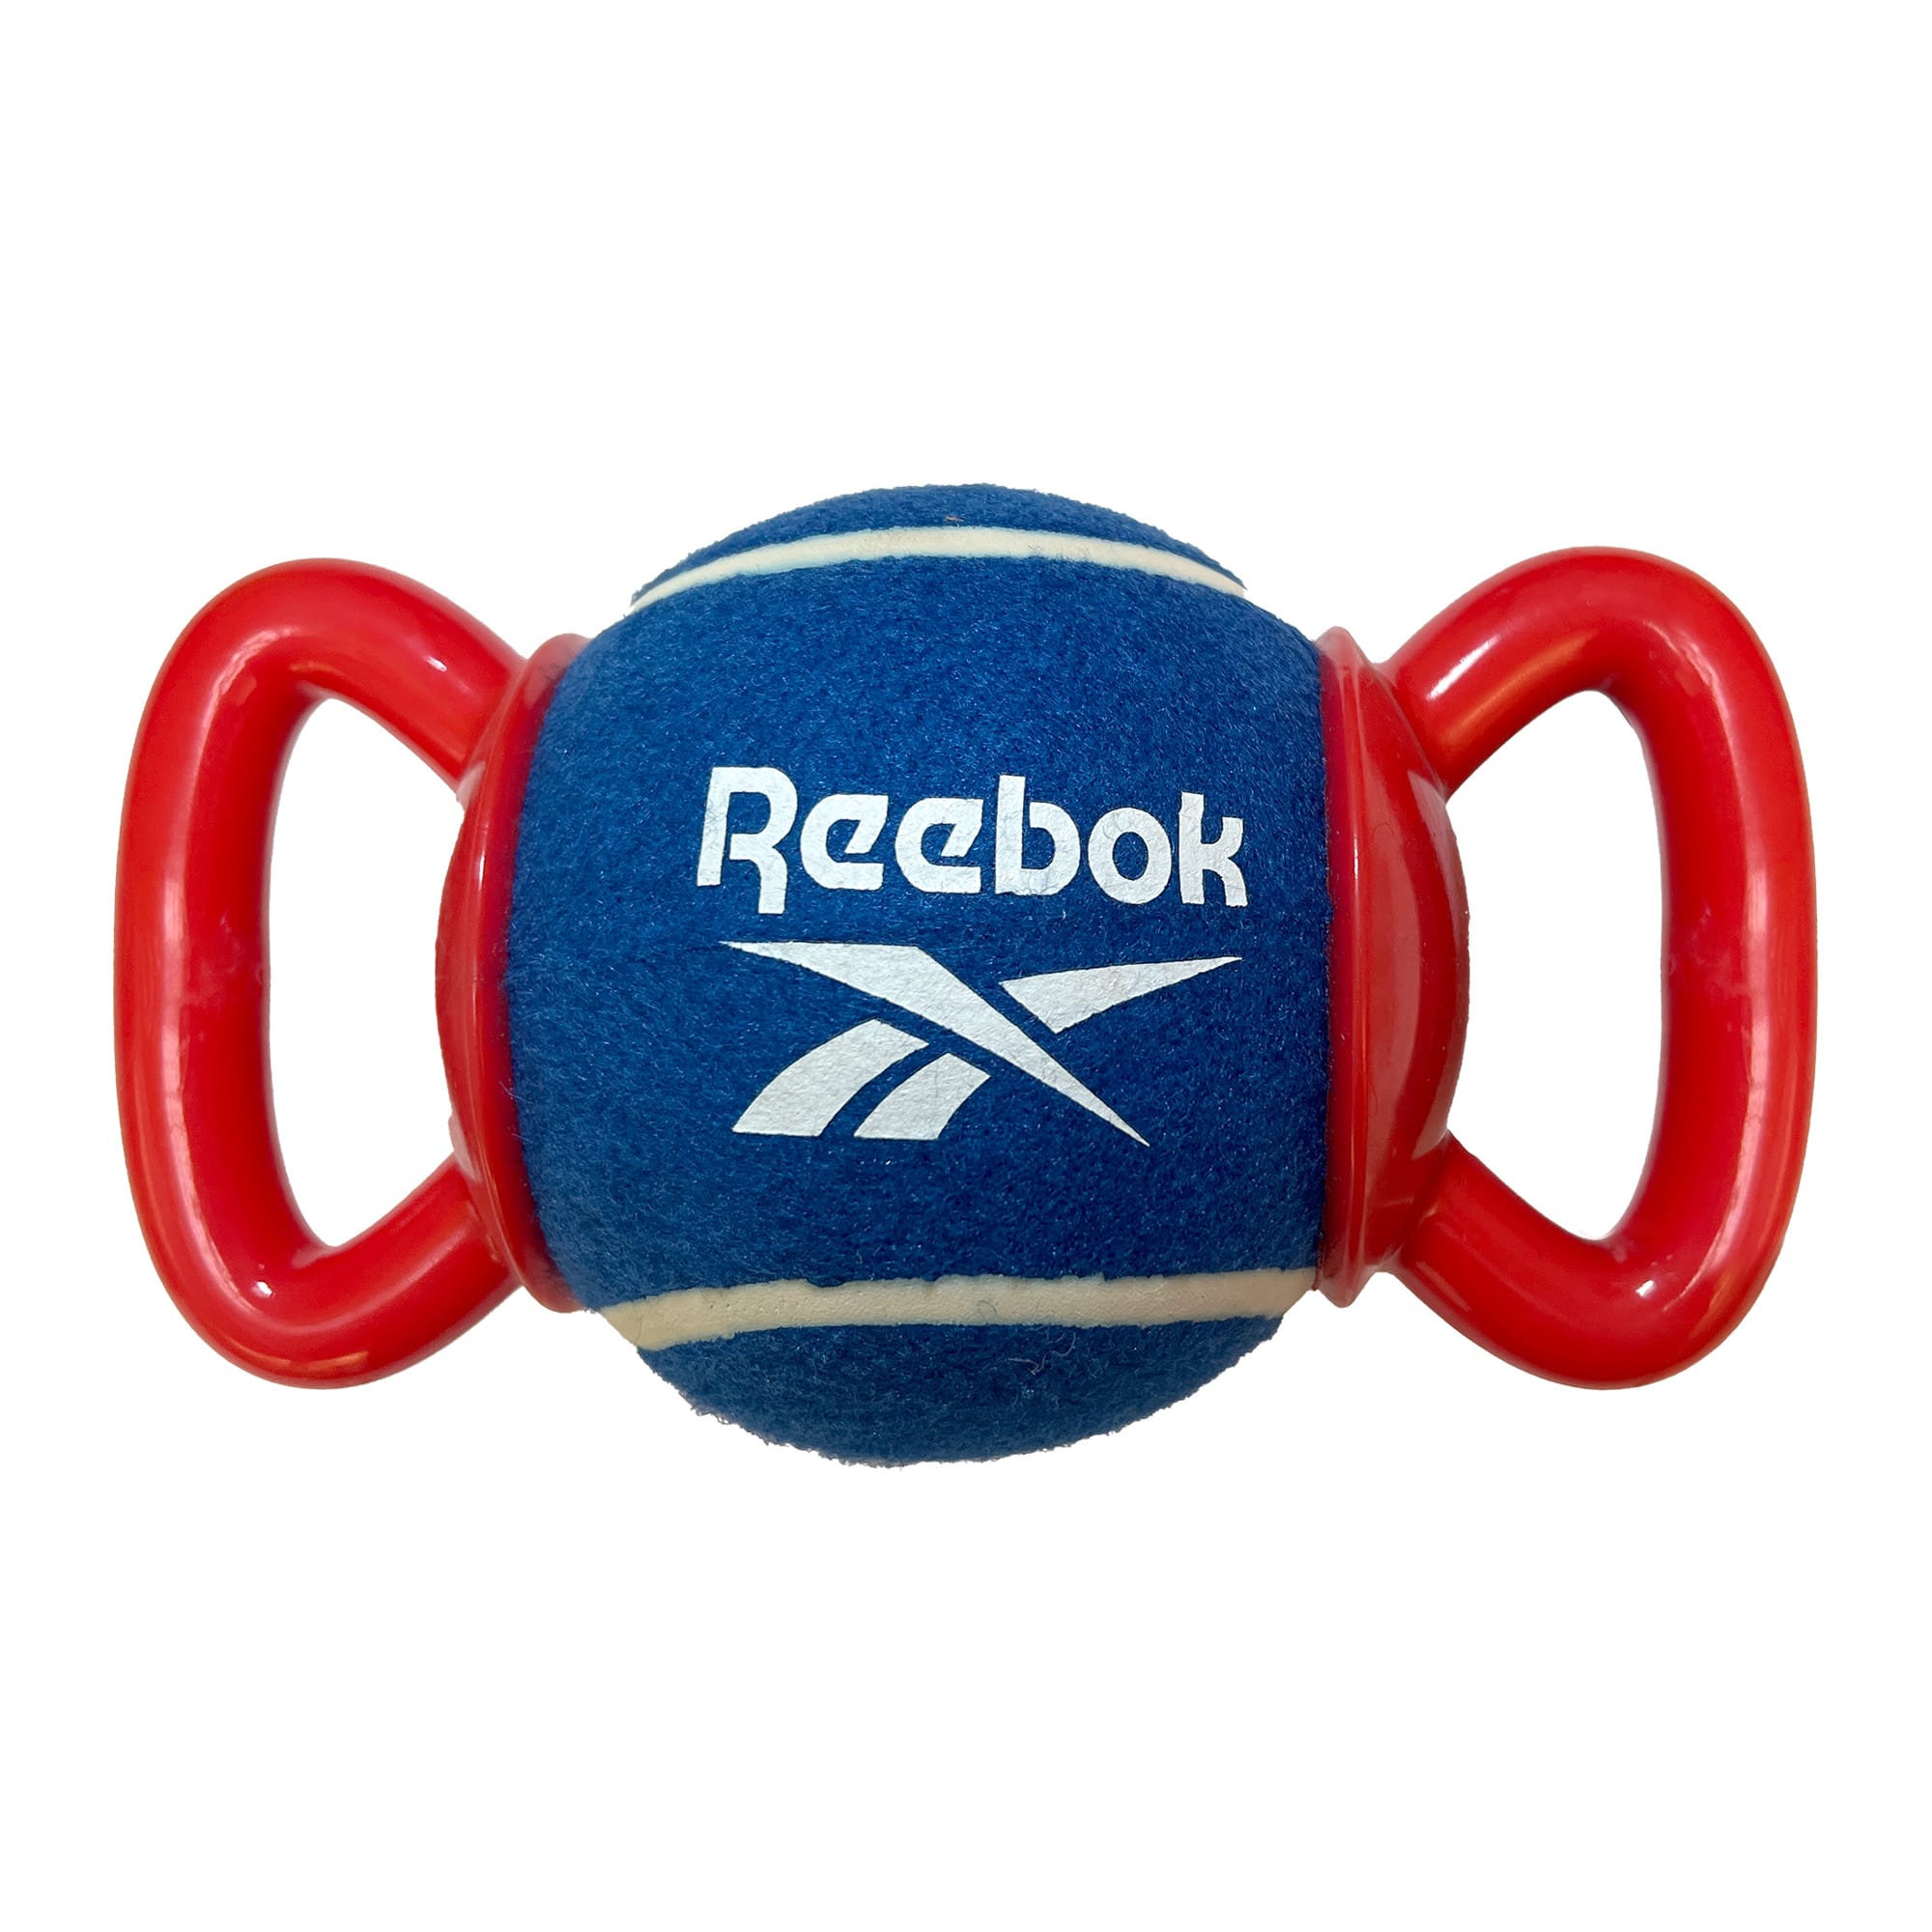 Reebok Tennis Ball Tug Dog Toy, Large Petco